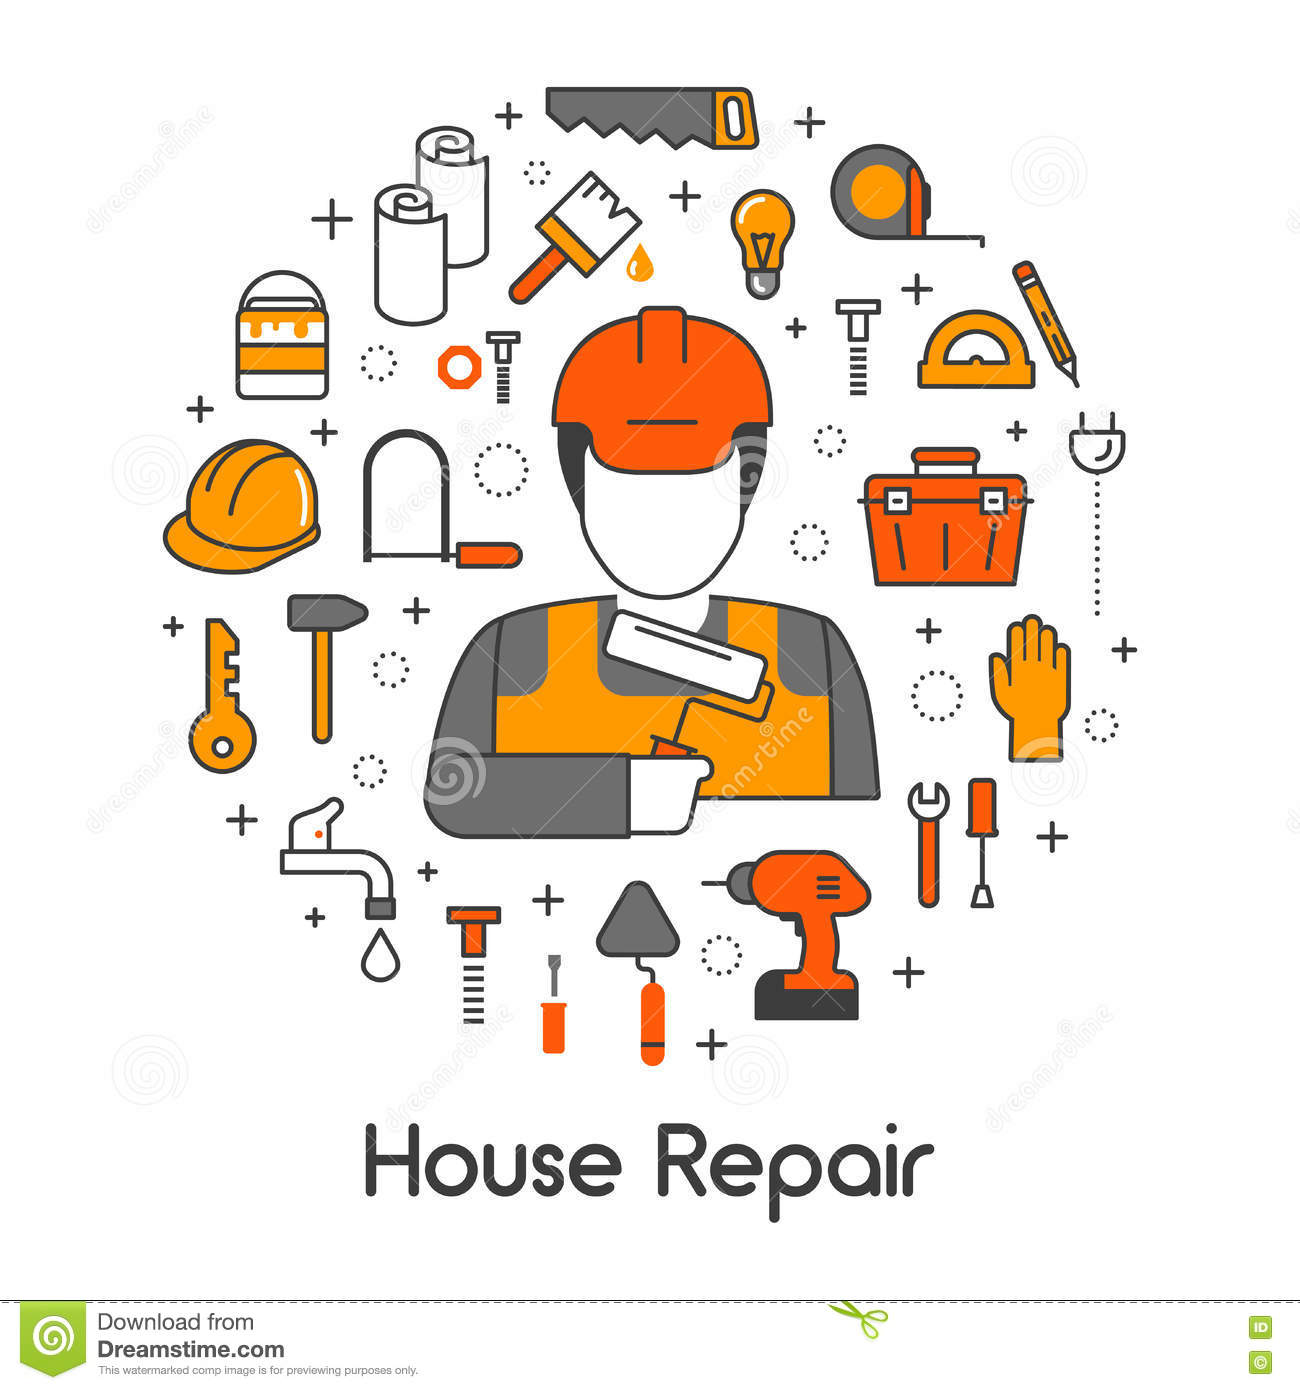 house repair clipart free - photo #5